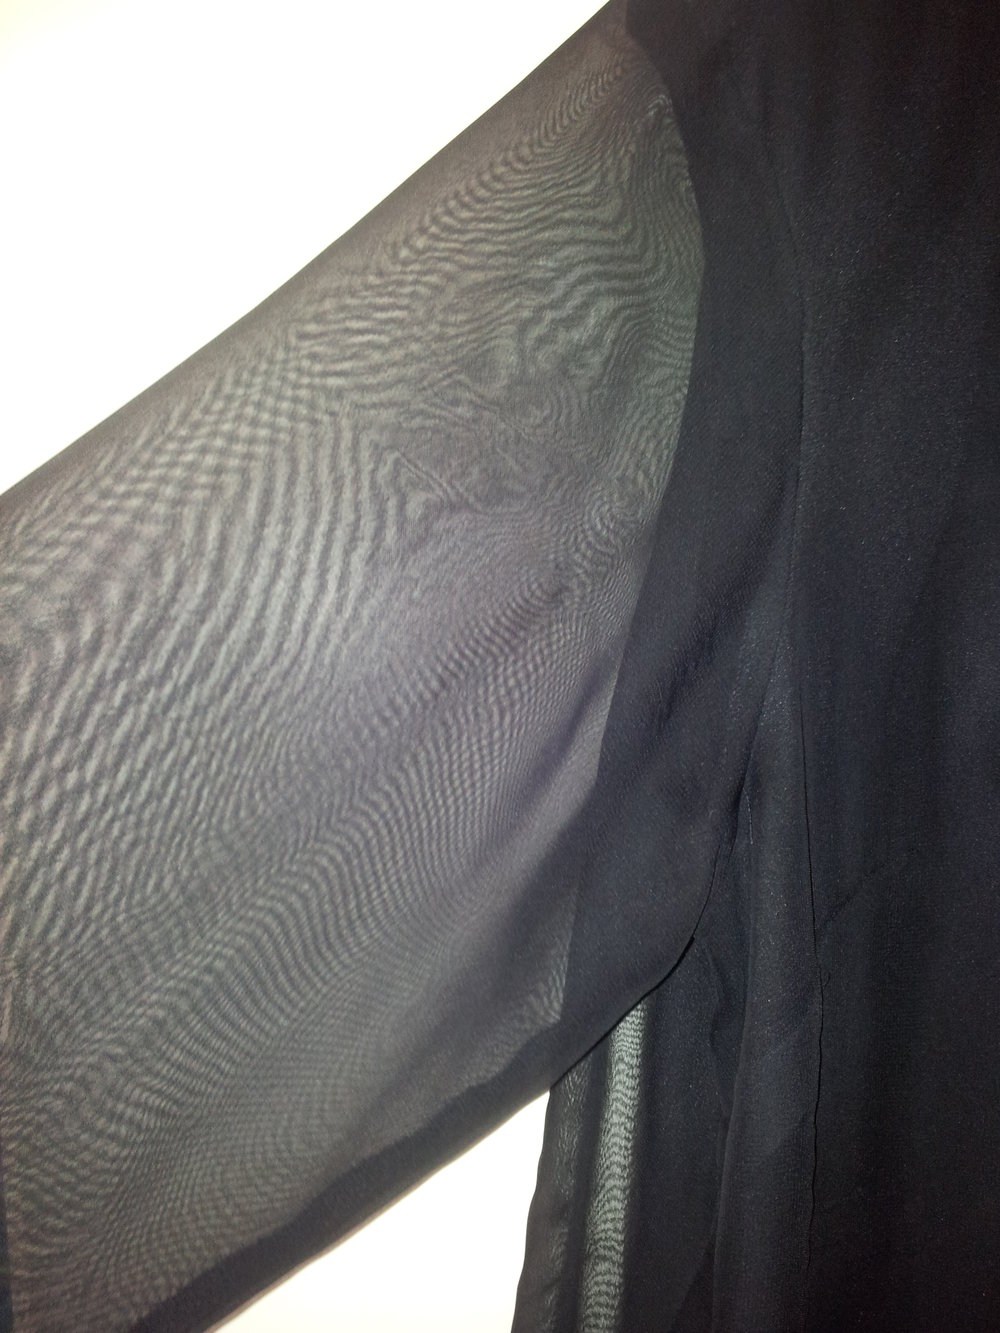 Bluse schwarz transparente Ärmel & Oberstoff Gr. 50